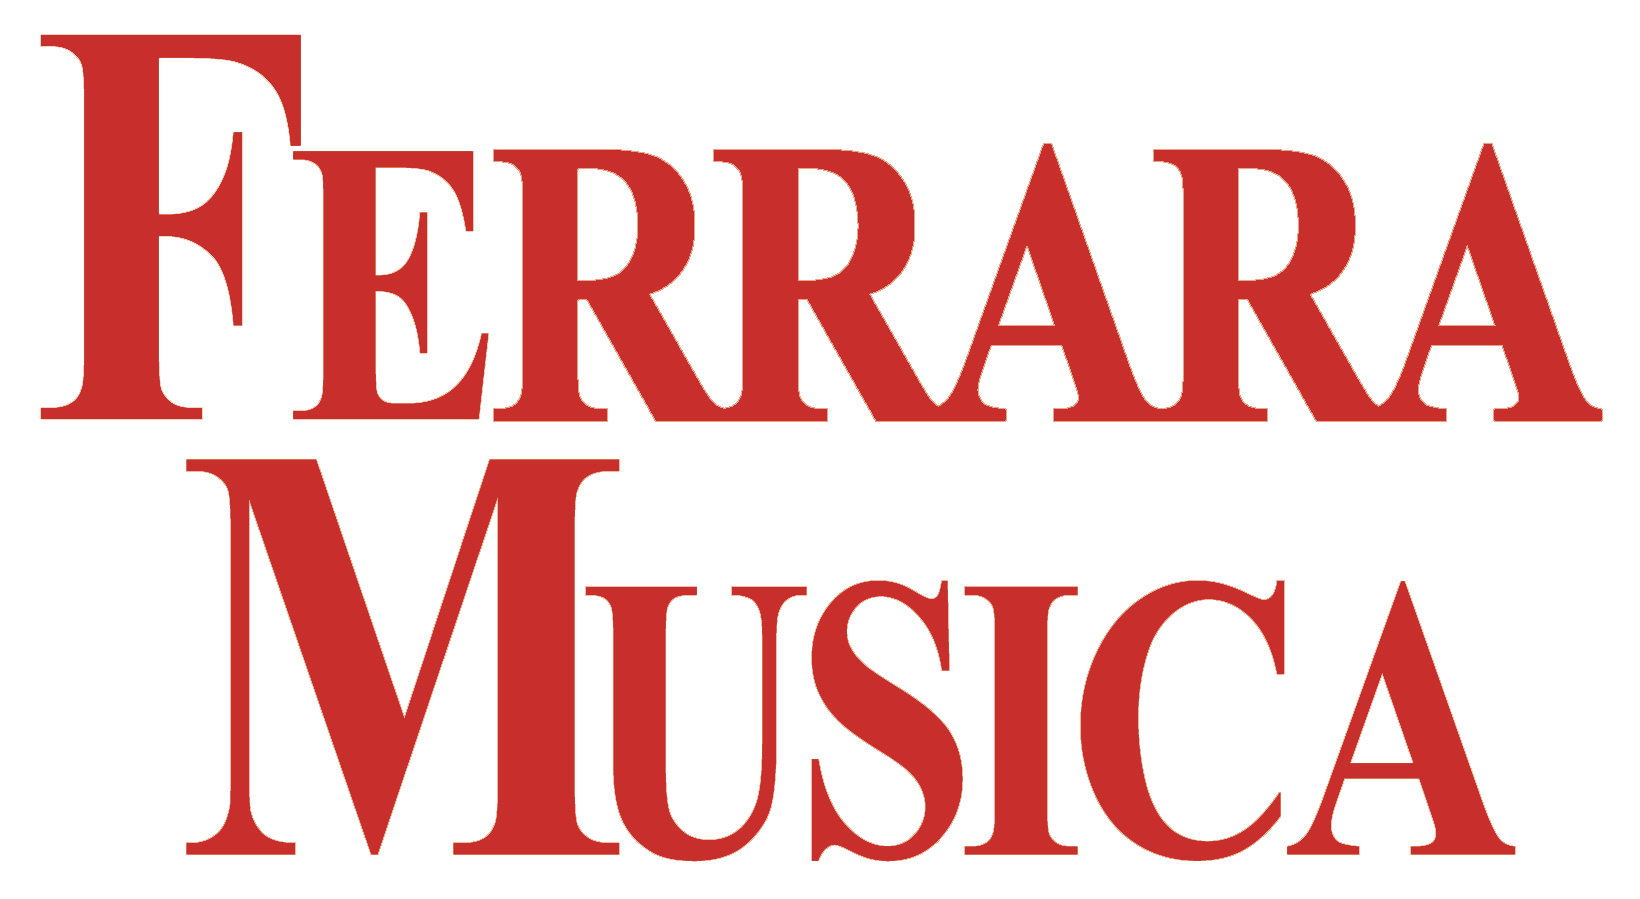 Ferrara Musica